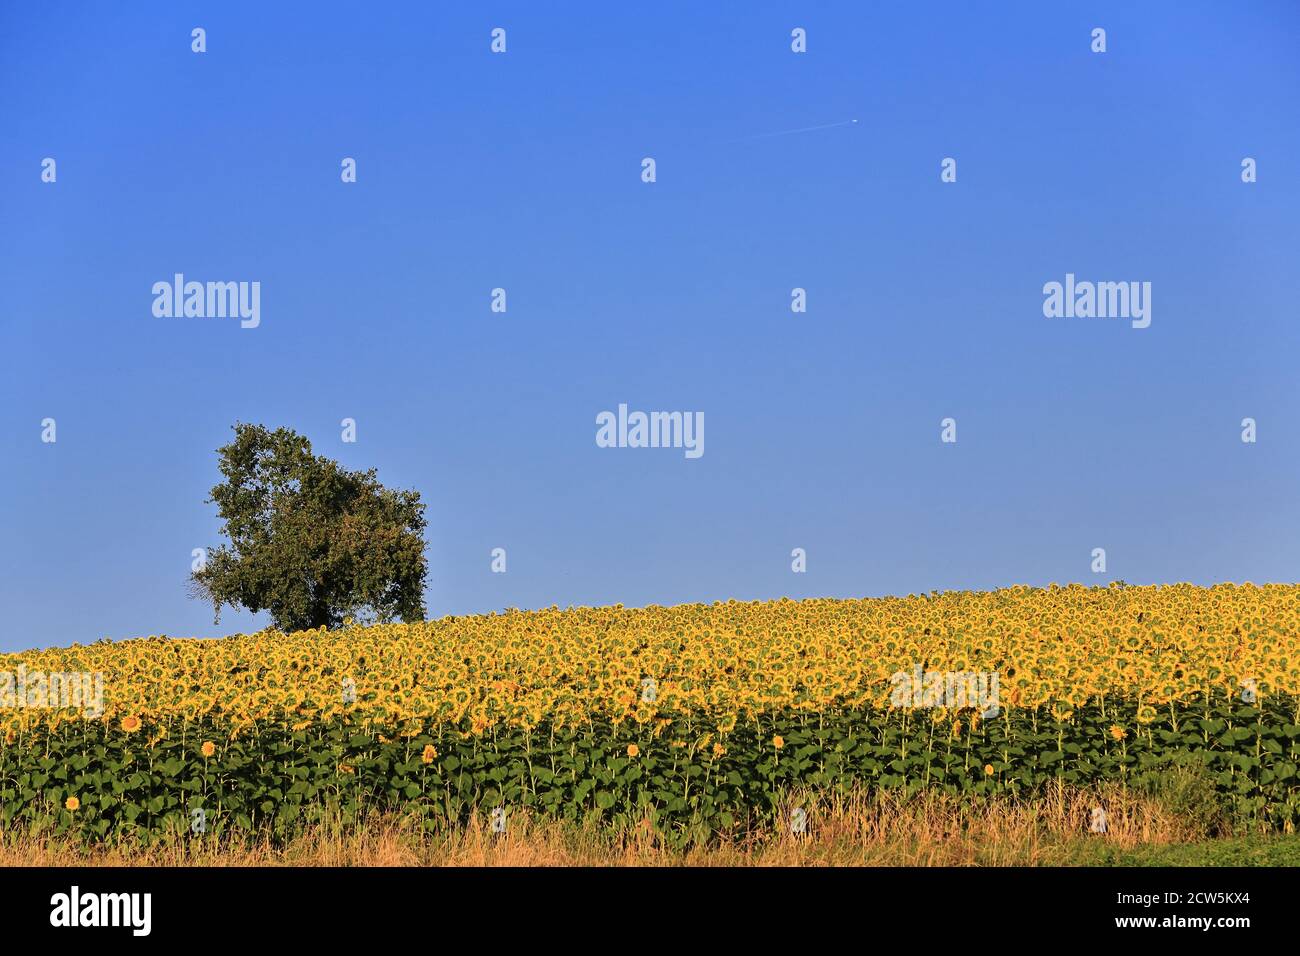 Einäugiger Baum innerhalb eines Sonnenblumenfeldes Helianthus annuus in seiner Hauptsaison unter dem klaren blauen Himmel und dem frühen Sonnenuntergang helle Sonne eines Augusttages. Stockfoto